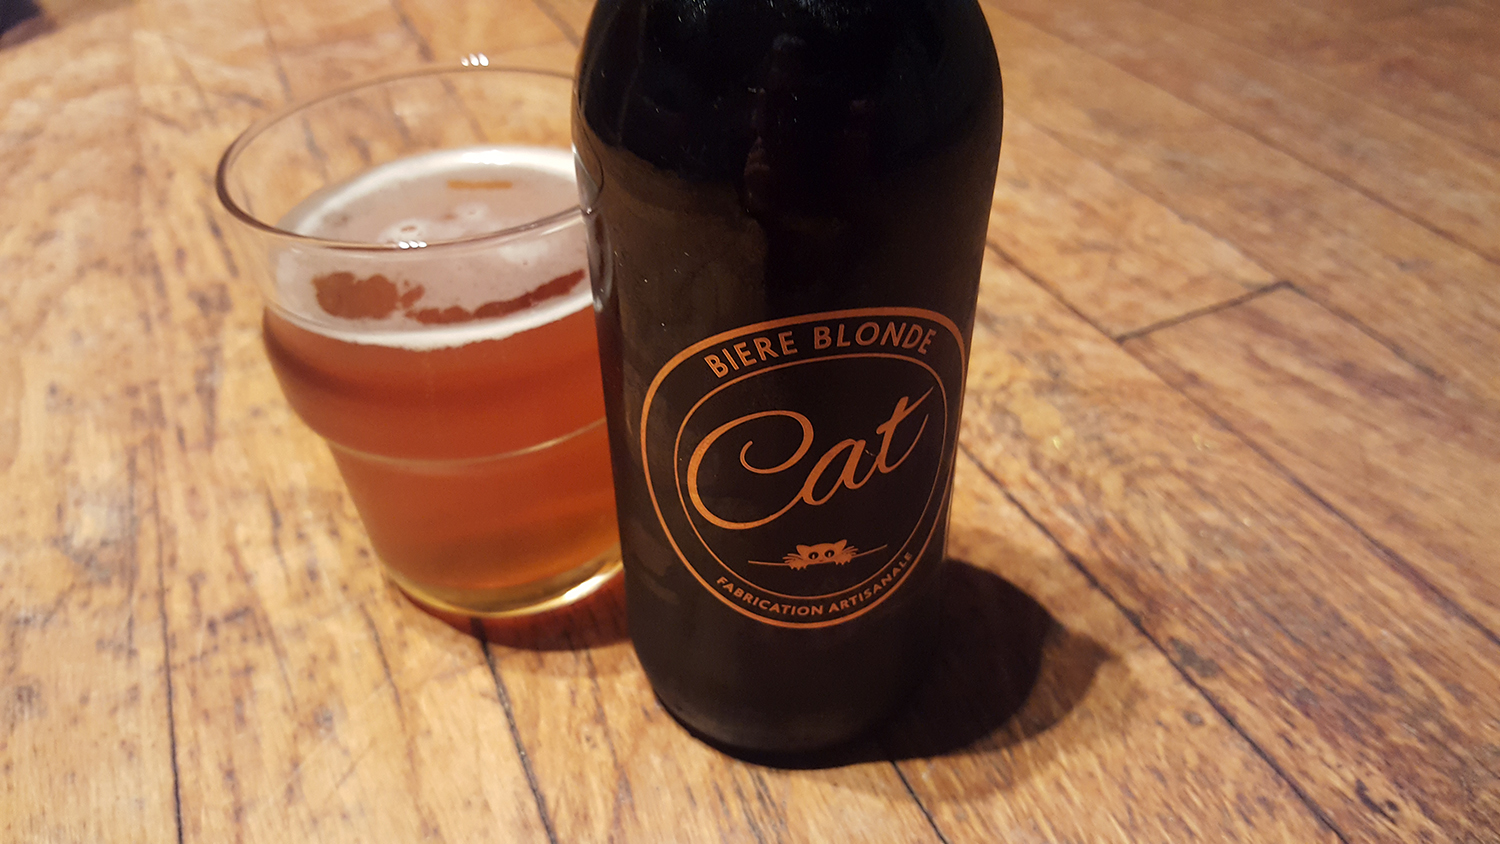 La bouteille de bière blonde artisanale Cat et son super logo doré représentant un chat à côté d'un verre servi.